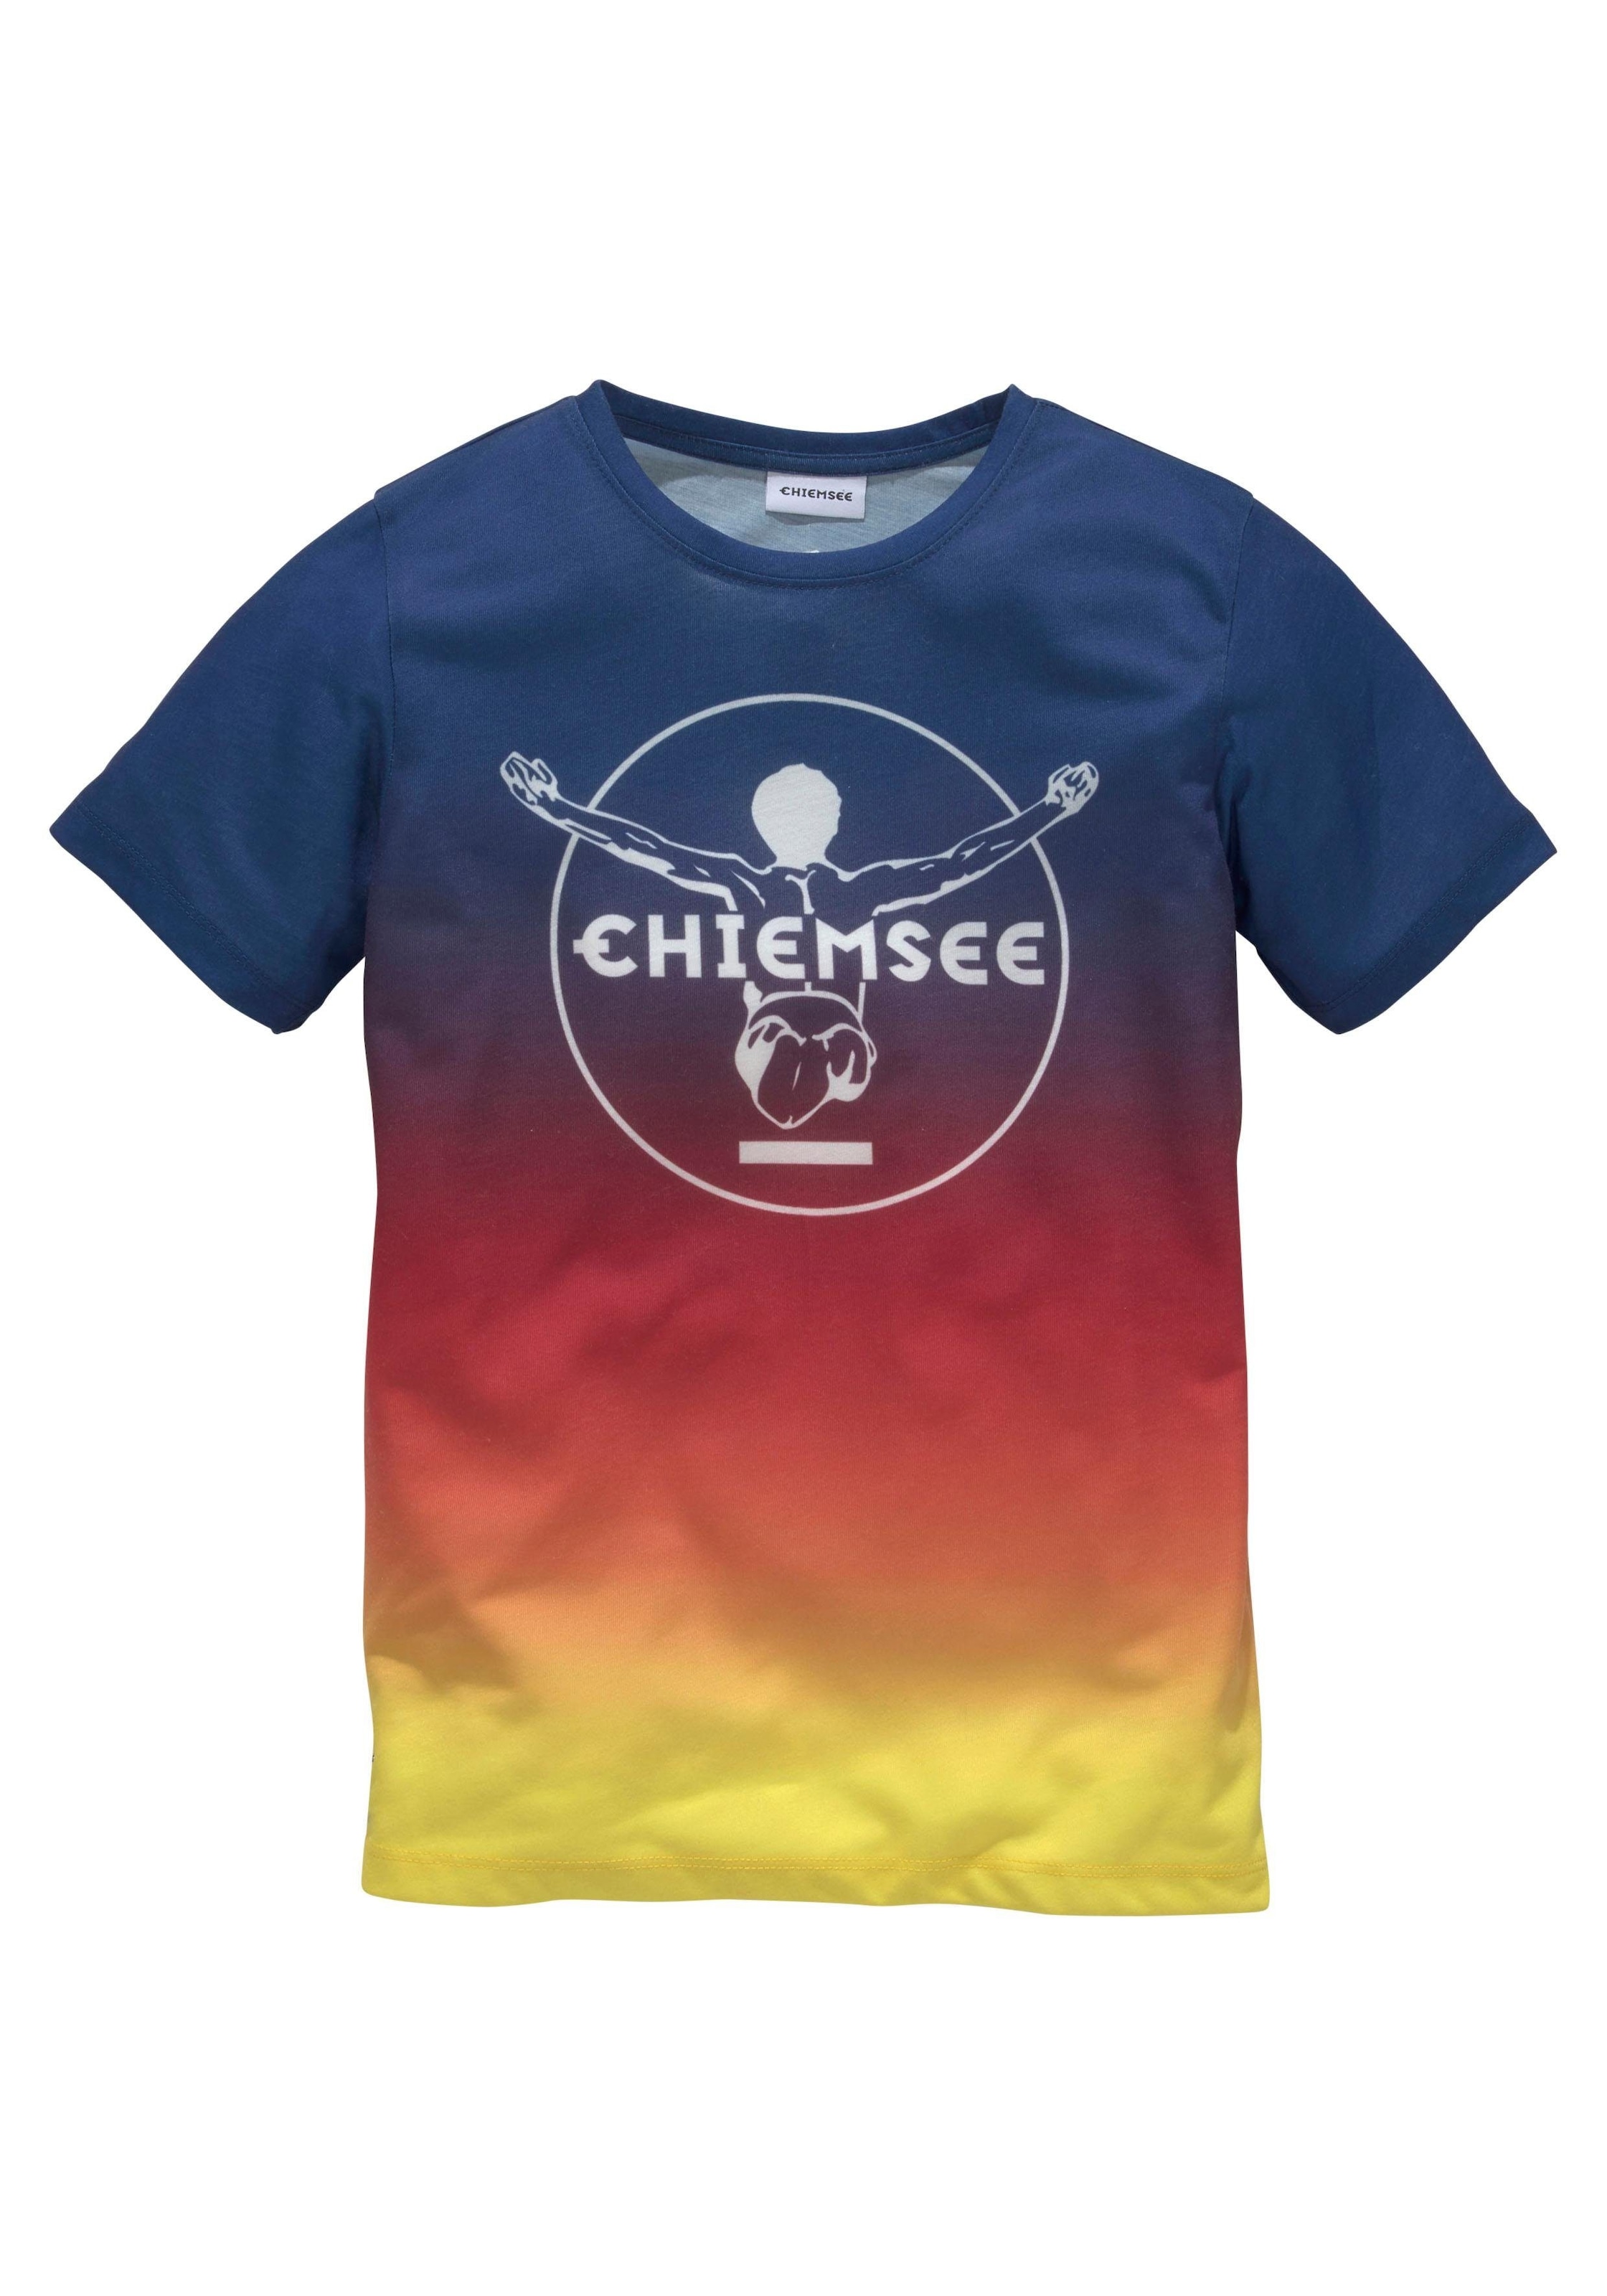 Chiemsee T-Shirt, Druck Farbverlauf vorn mit im